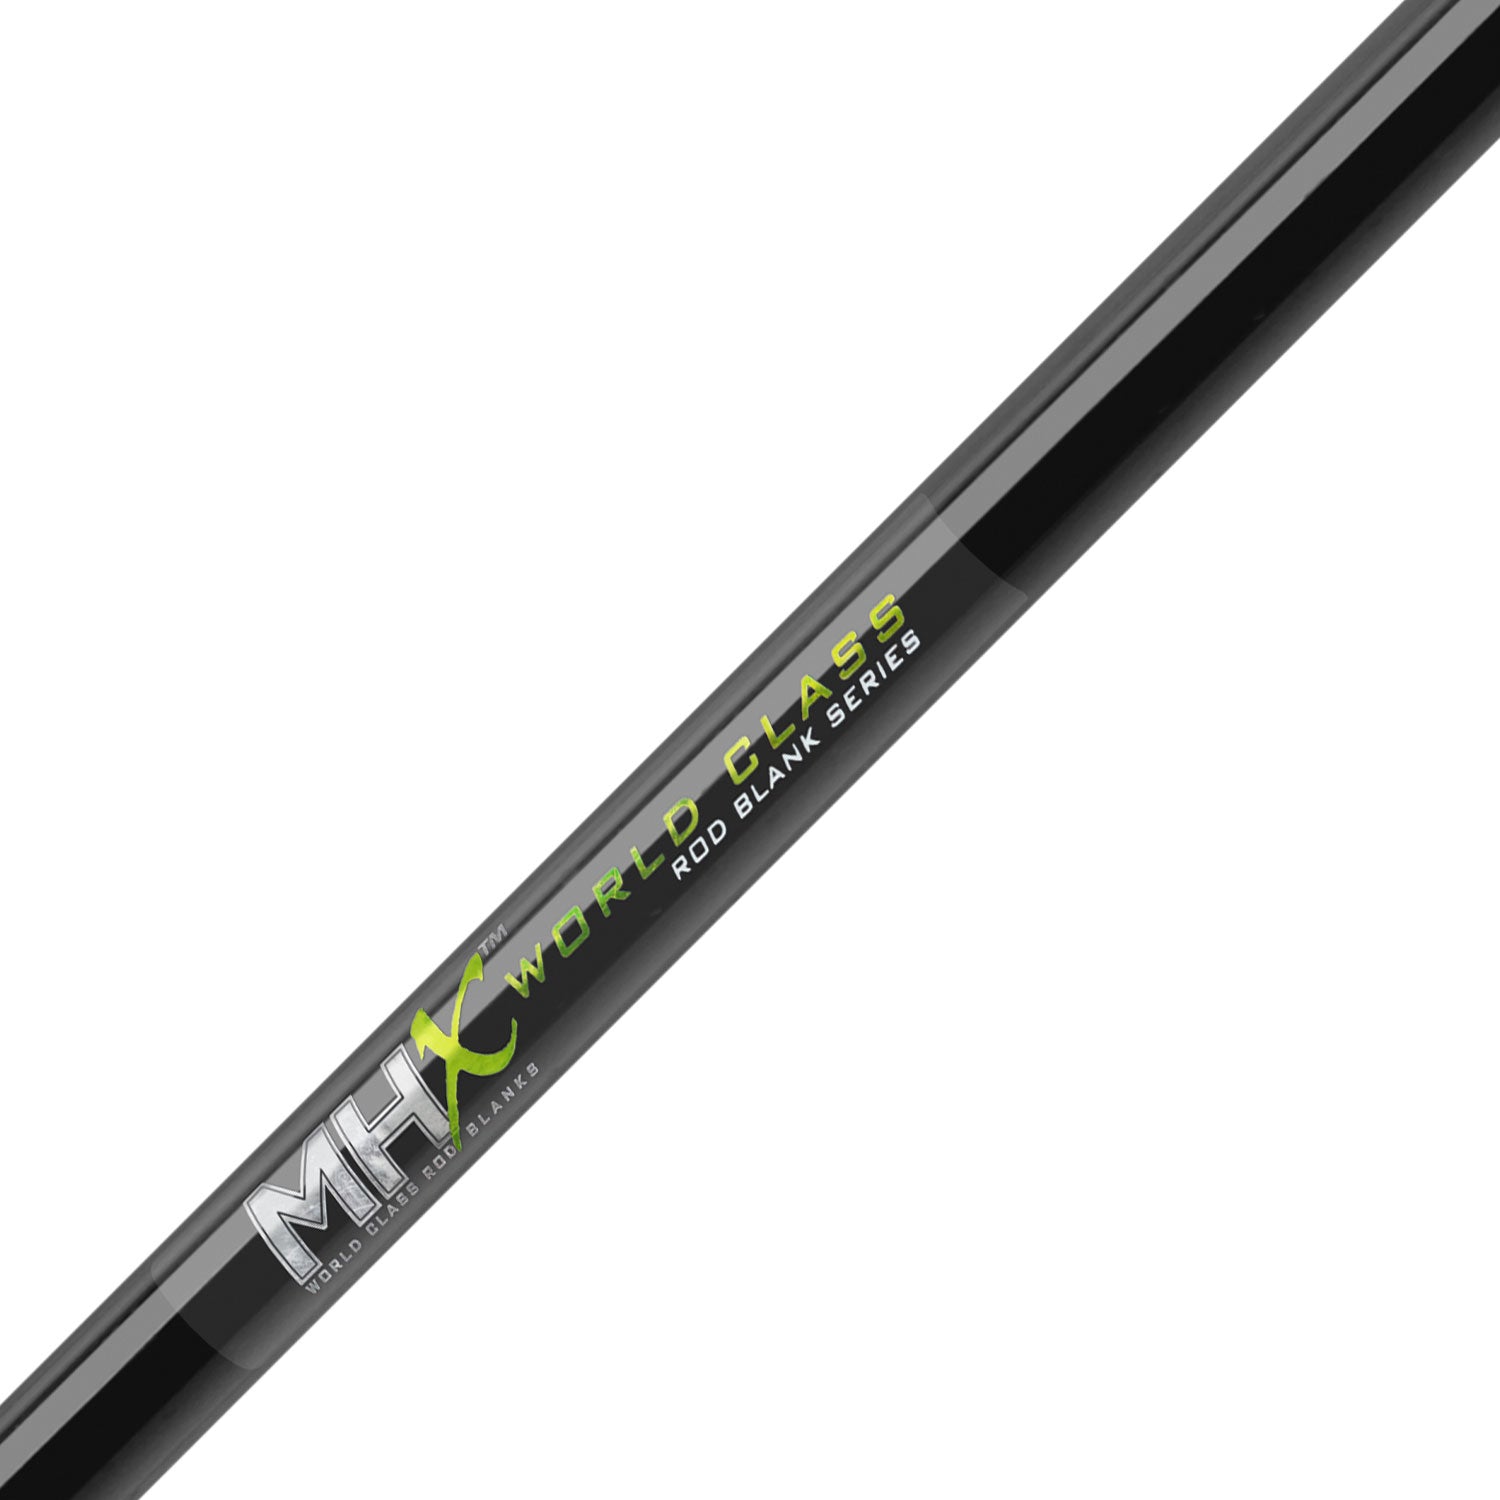 MHX 9'0 Med-Heavy Surf Rod Blank - SU1088F-MHX